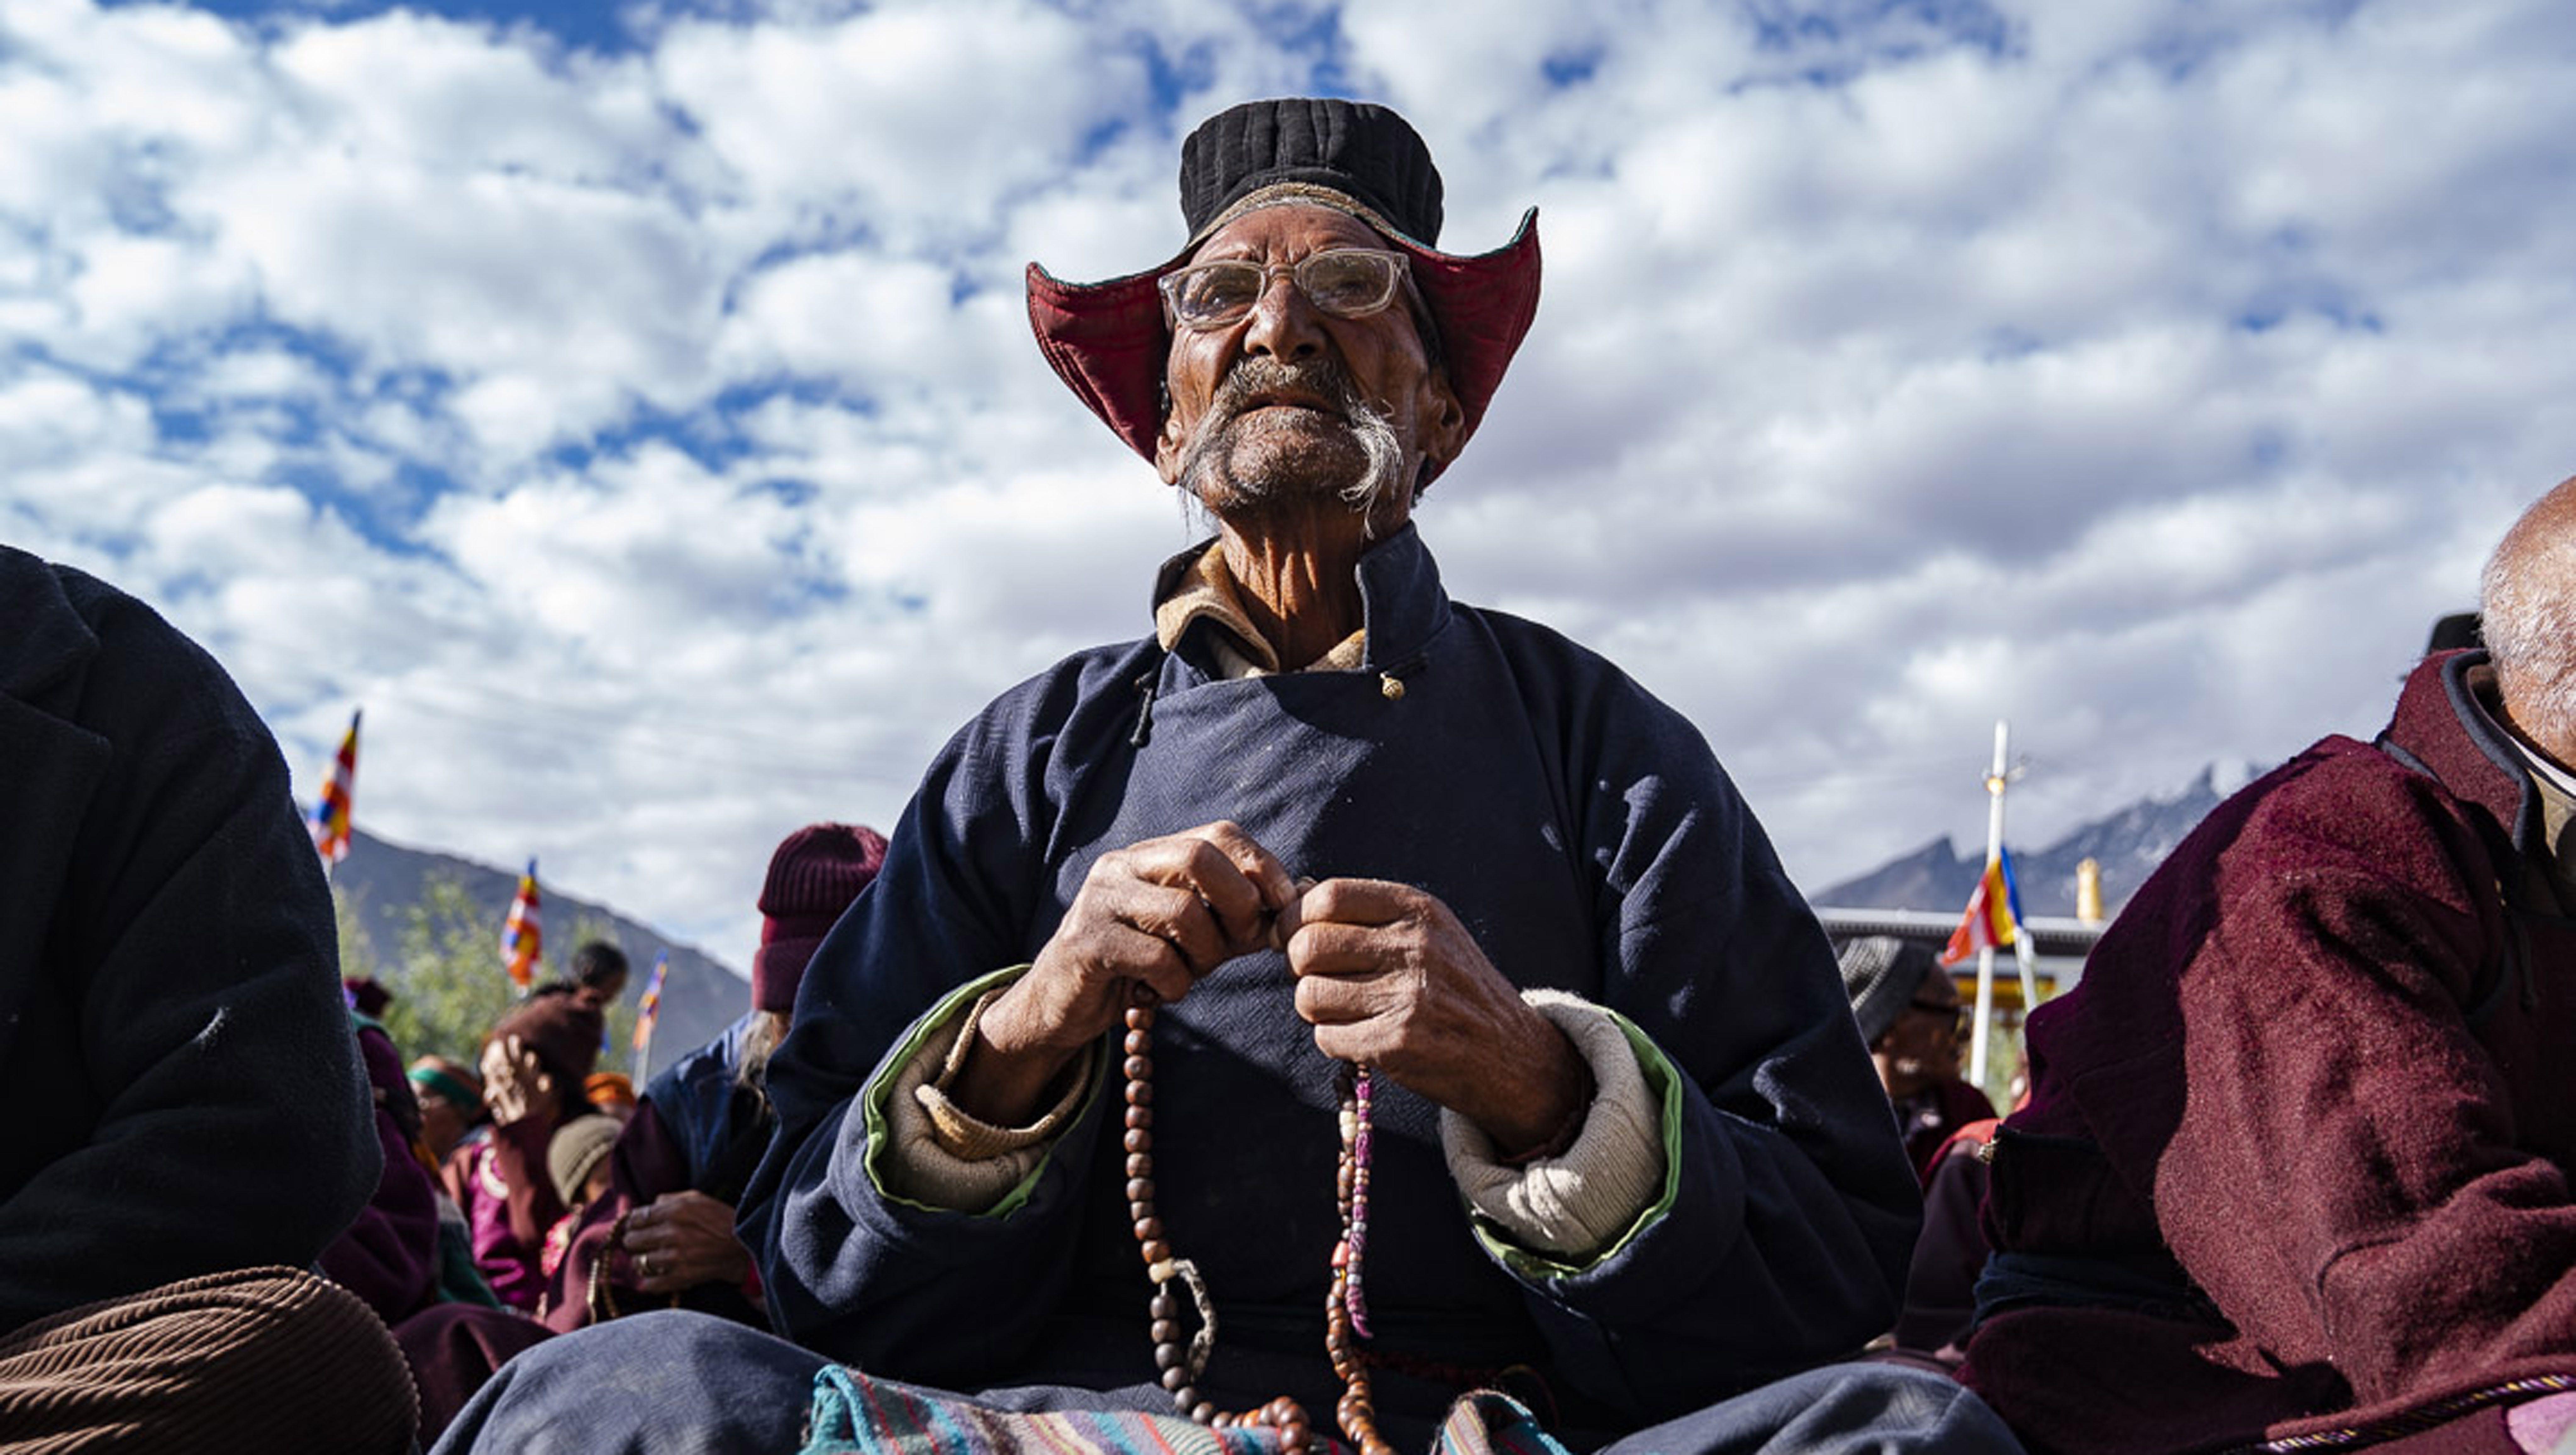 Un miembro de la audiencia escuchando las enseñanzas de Su Santidad el Dalái Lama en Padum, Zanskar, J&K, India, el 22 de julio de 2018. Foto de Tenzin Choejor